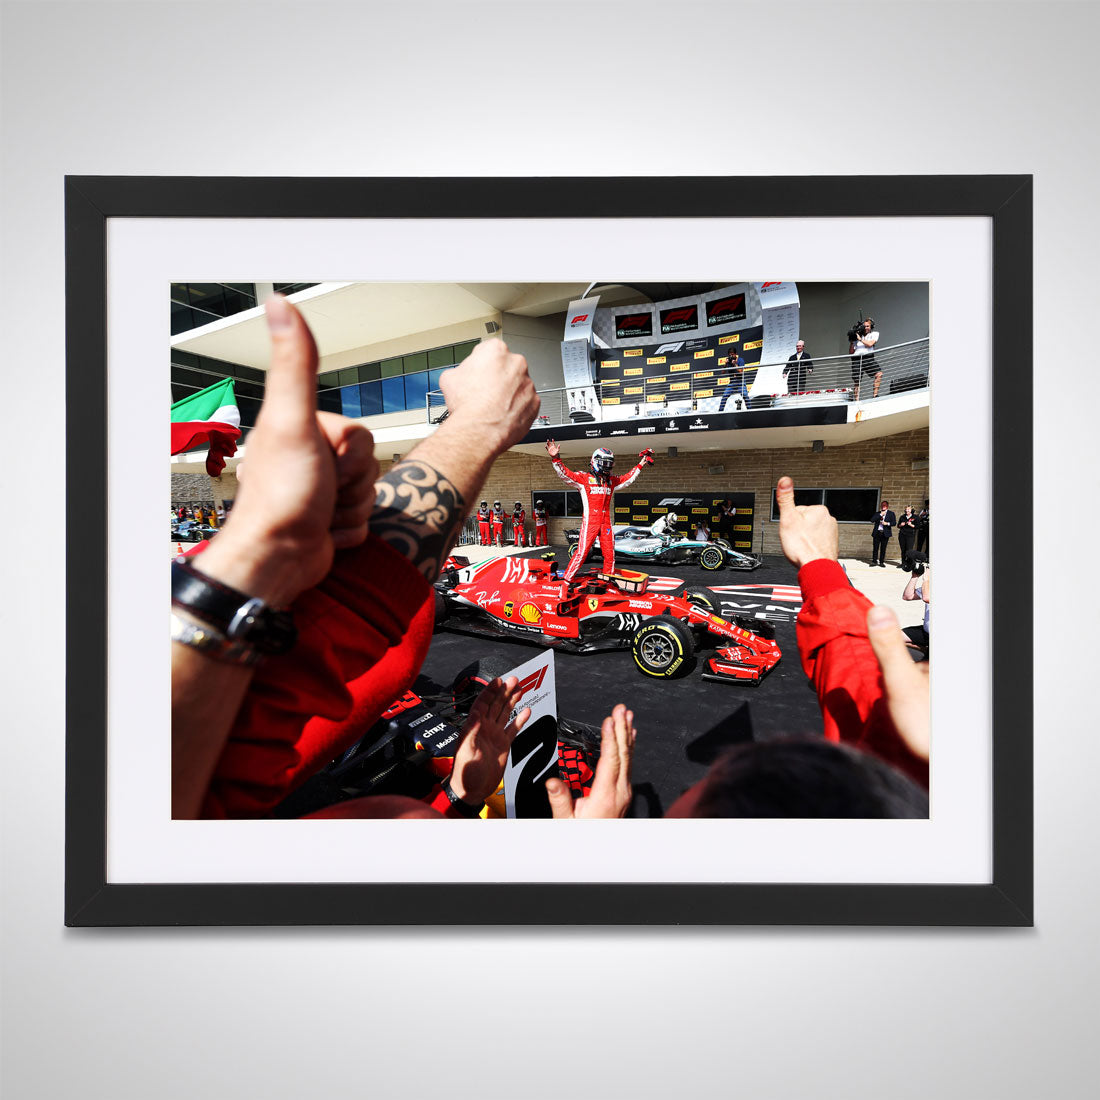 Kimi Raikkonen's 'Final Ferrari Win' Print – United States GP